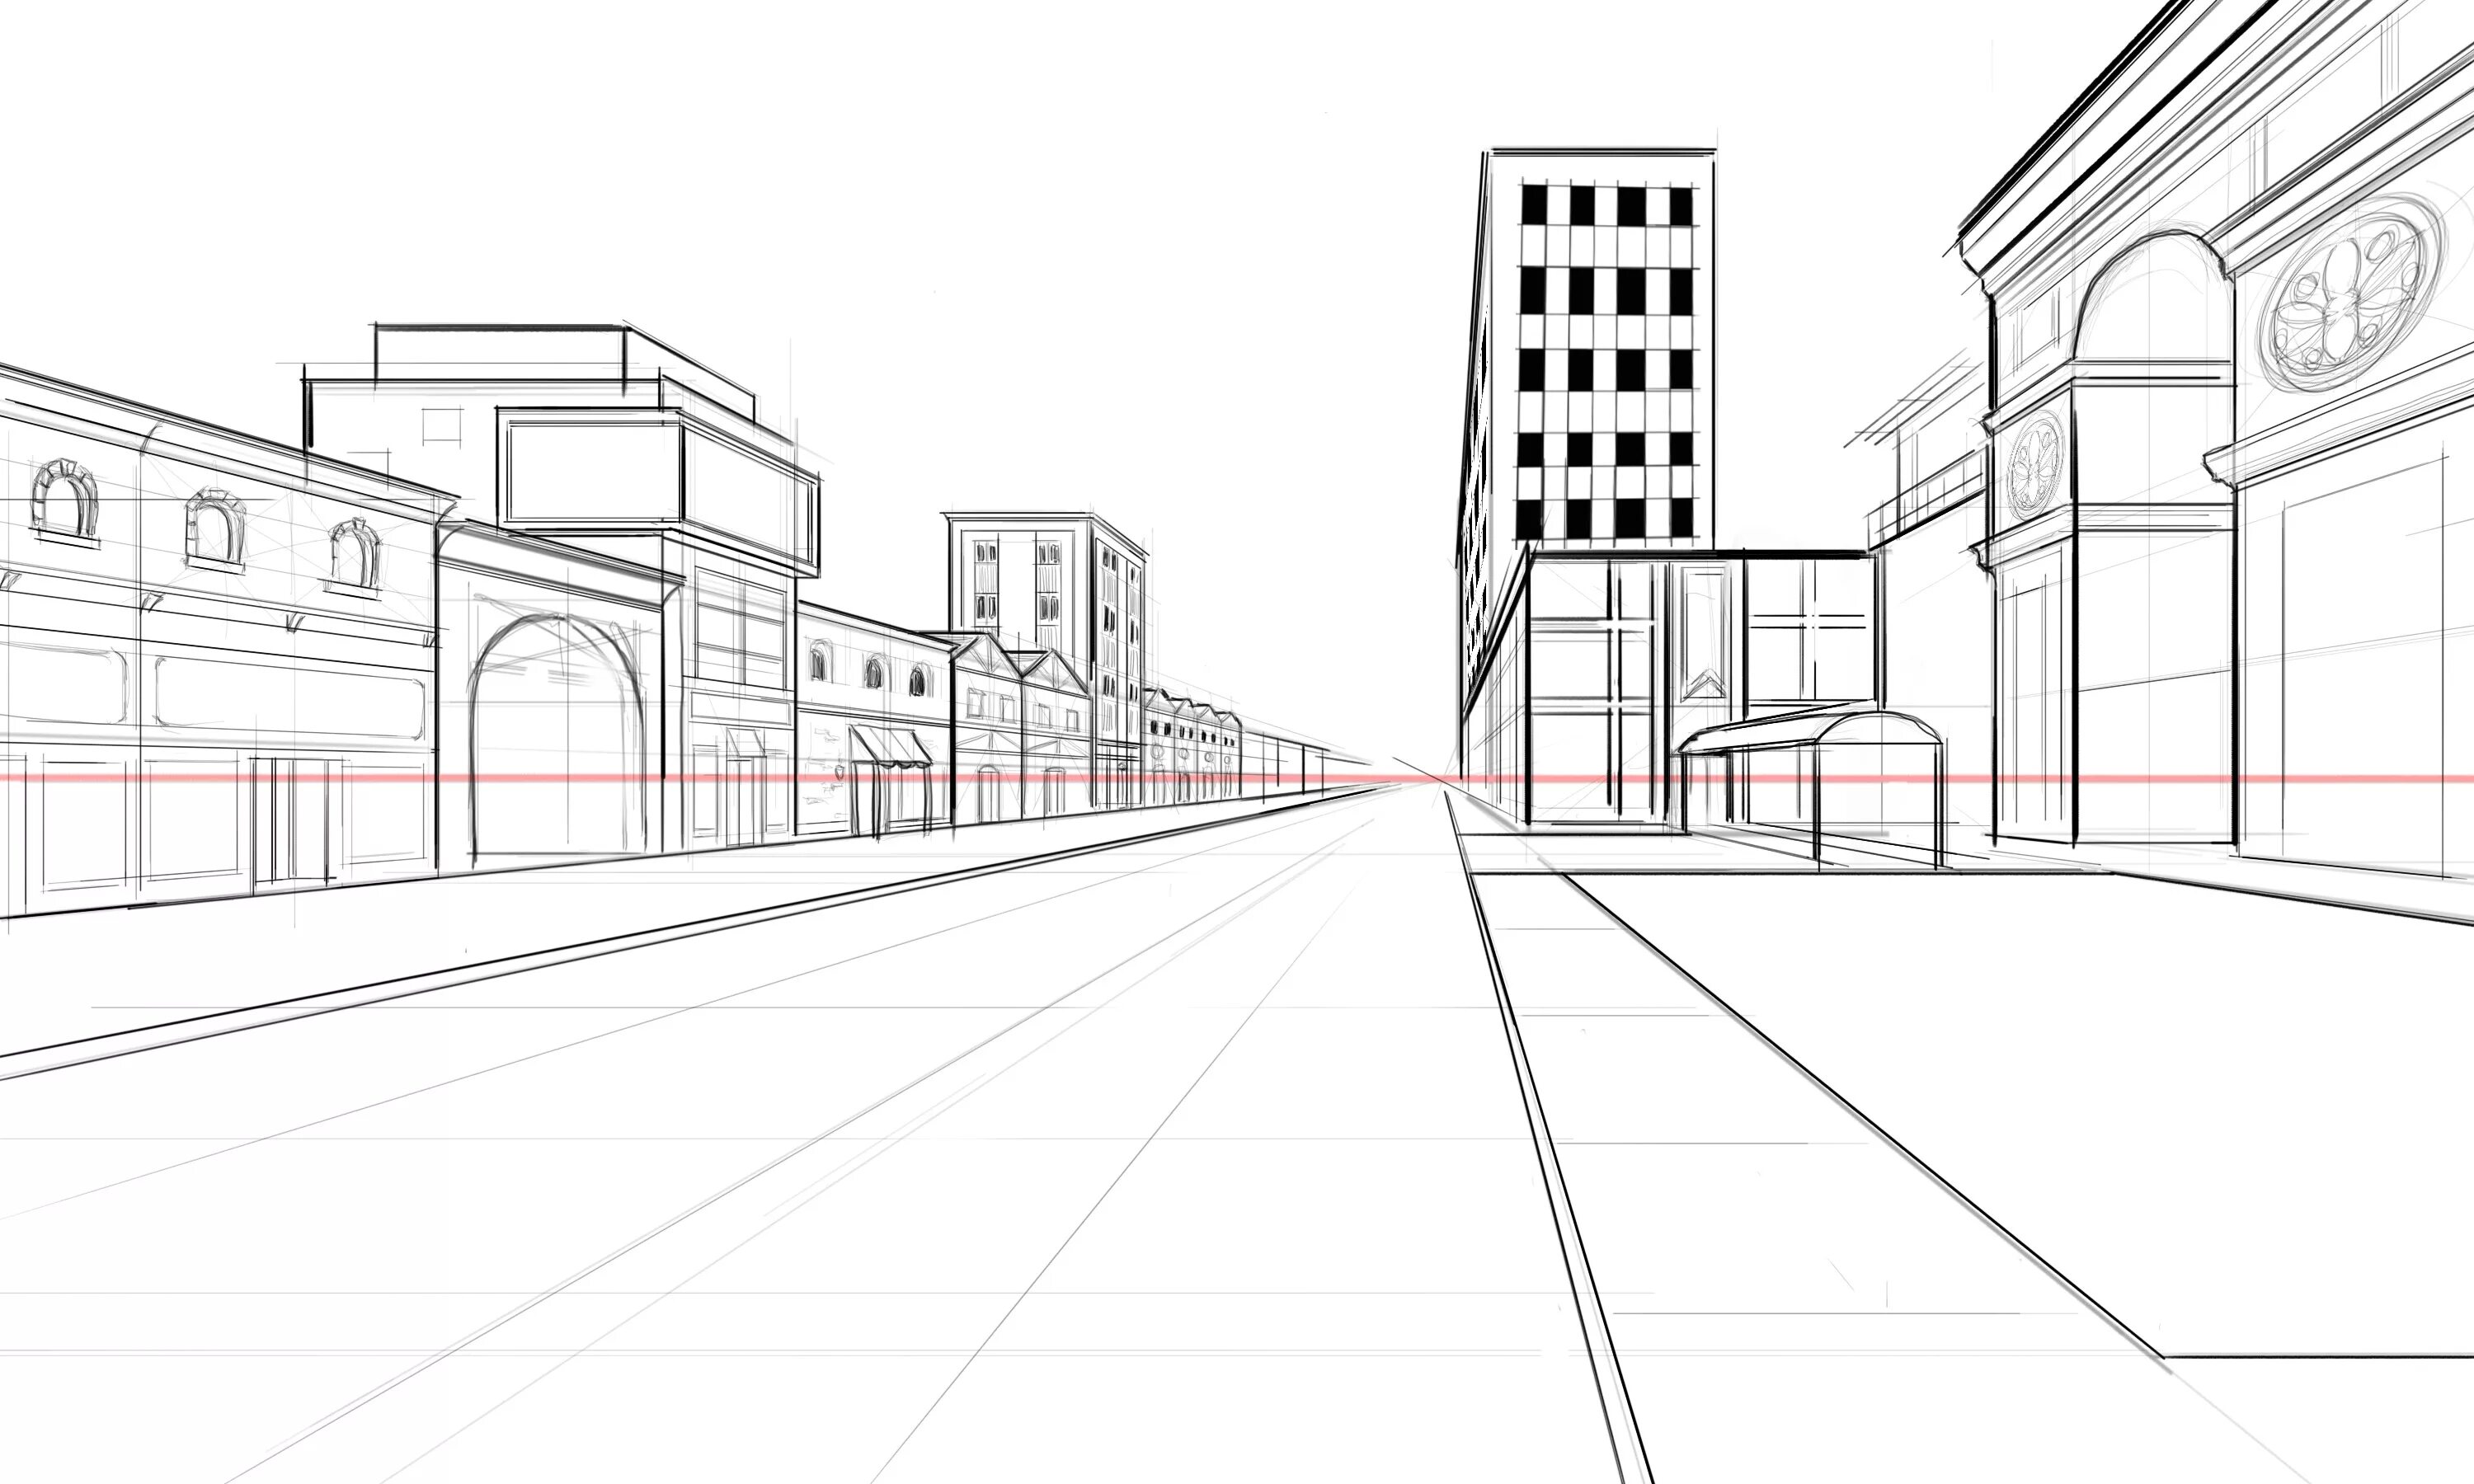 Зарисовка города линейная перспектива. Перспектива улицы. Эскиз городского пейзажа. Городской пейзаж в перспективе. Рисунок нарисовать улицу